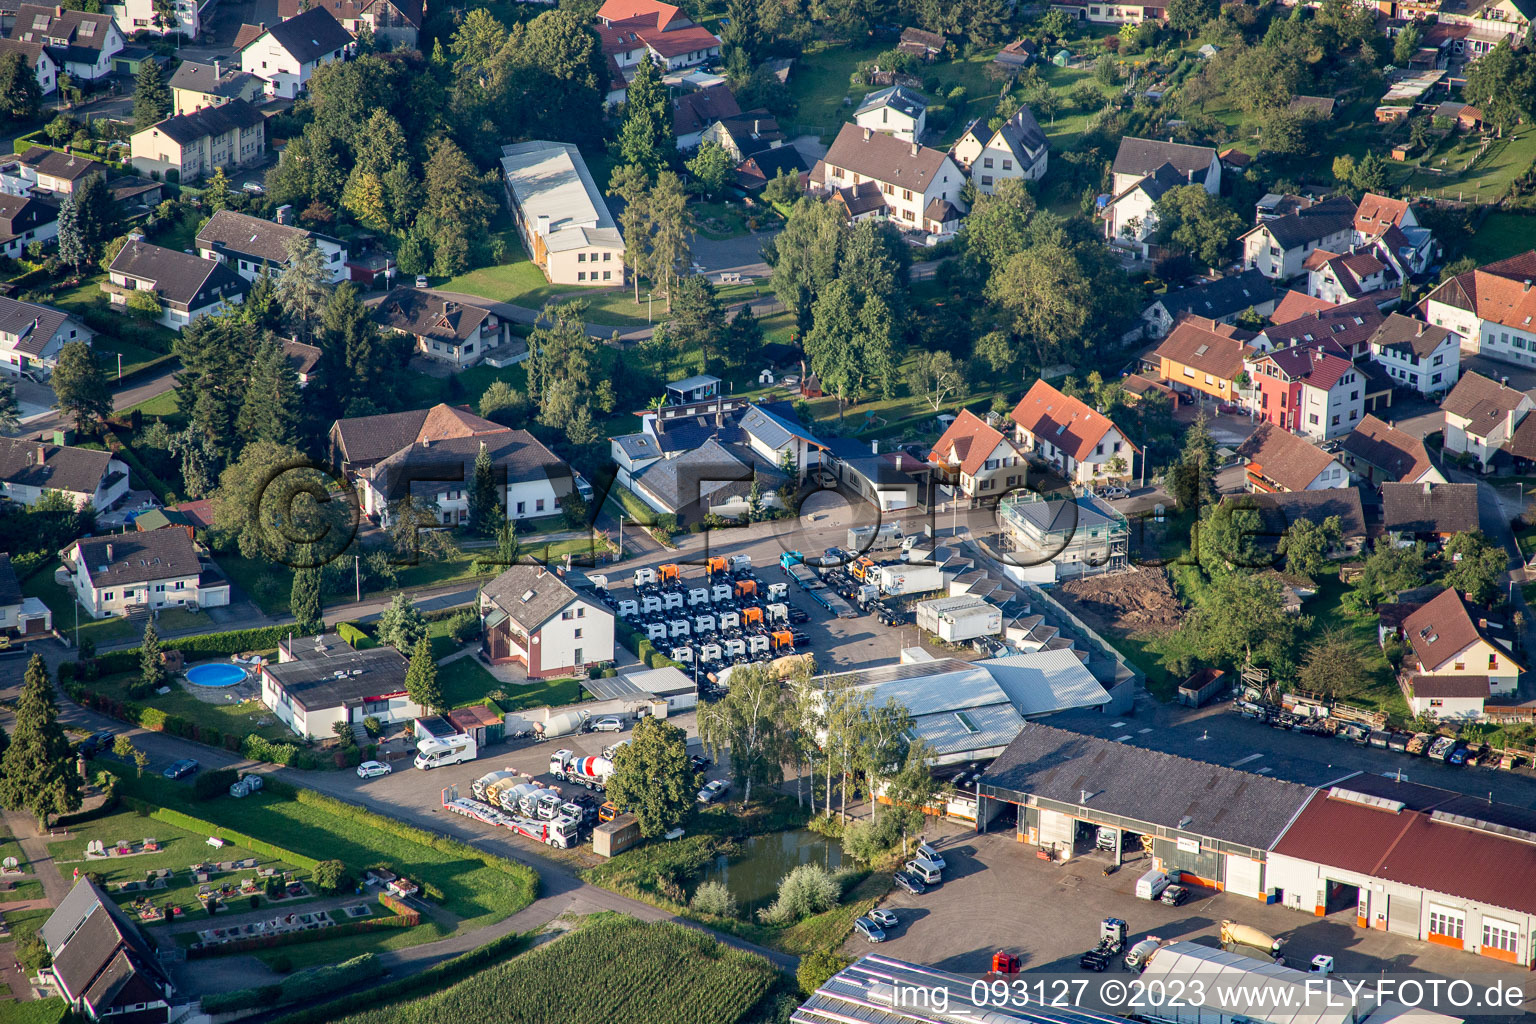 Luftbild von Bickel-tec GmbH im Ortsteil Helmlingen in Rheinau im Bundesland Baden-Württemberg, Deutschland